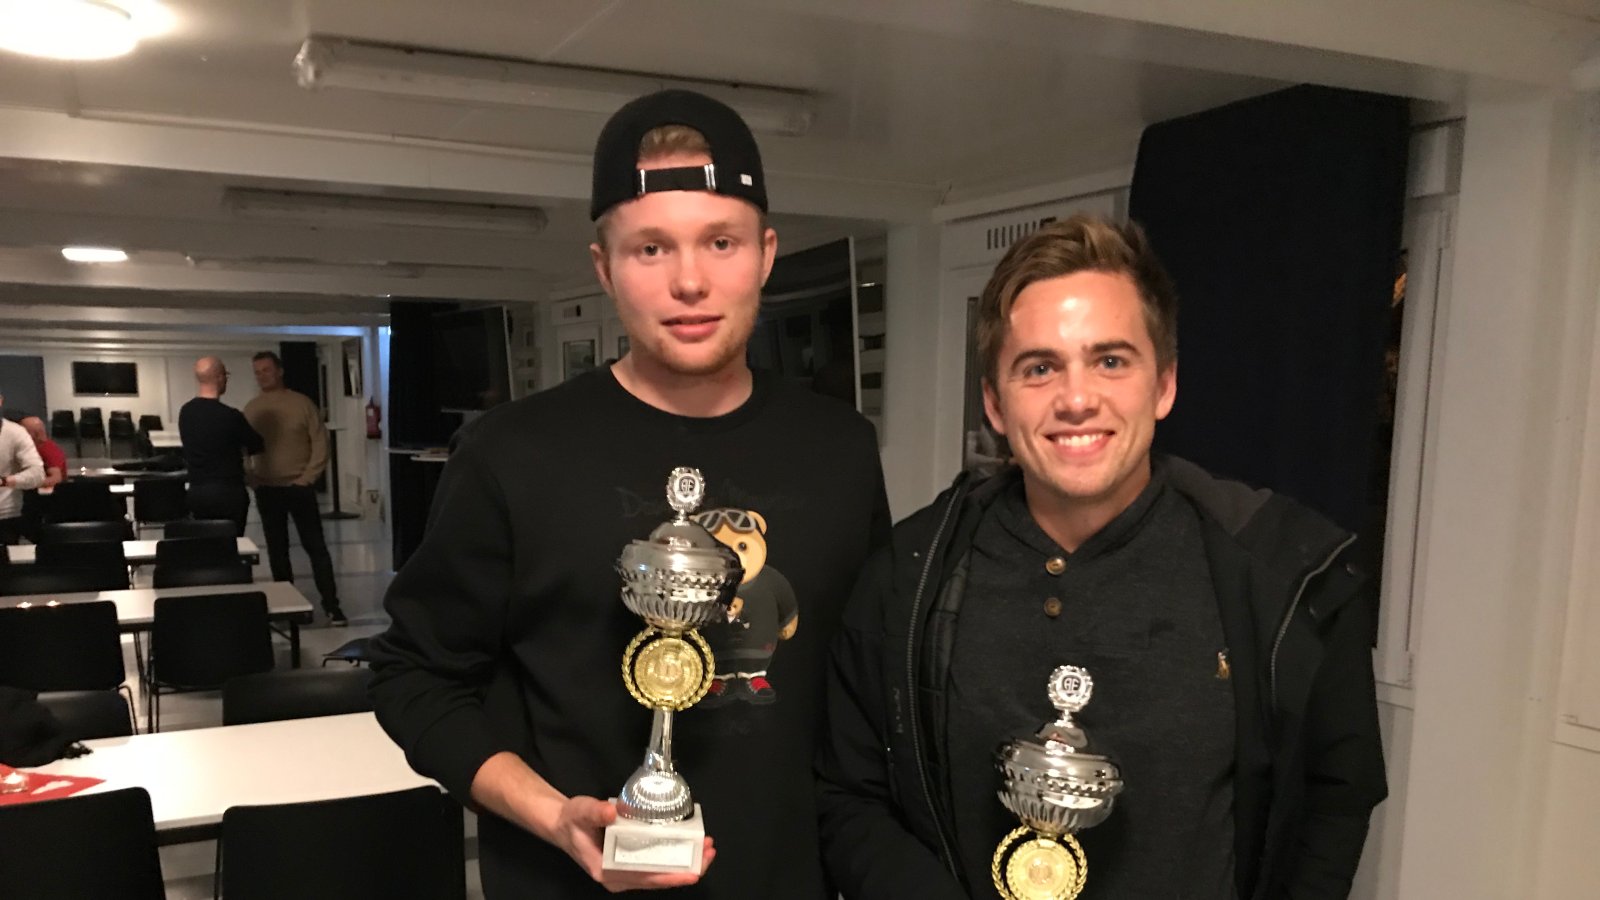 Fabian Stensrud Ness (t.v.) og Kim Kvaalen fikk priser for henholdsvis "Årets toppscorer" og "Årets spiller" i 2018 i Arendal Fotball.